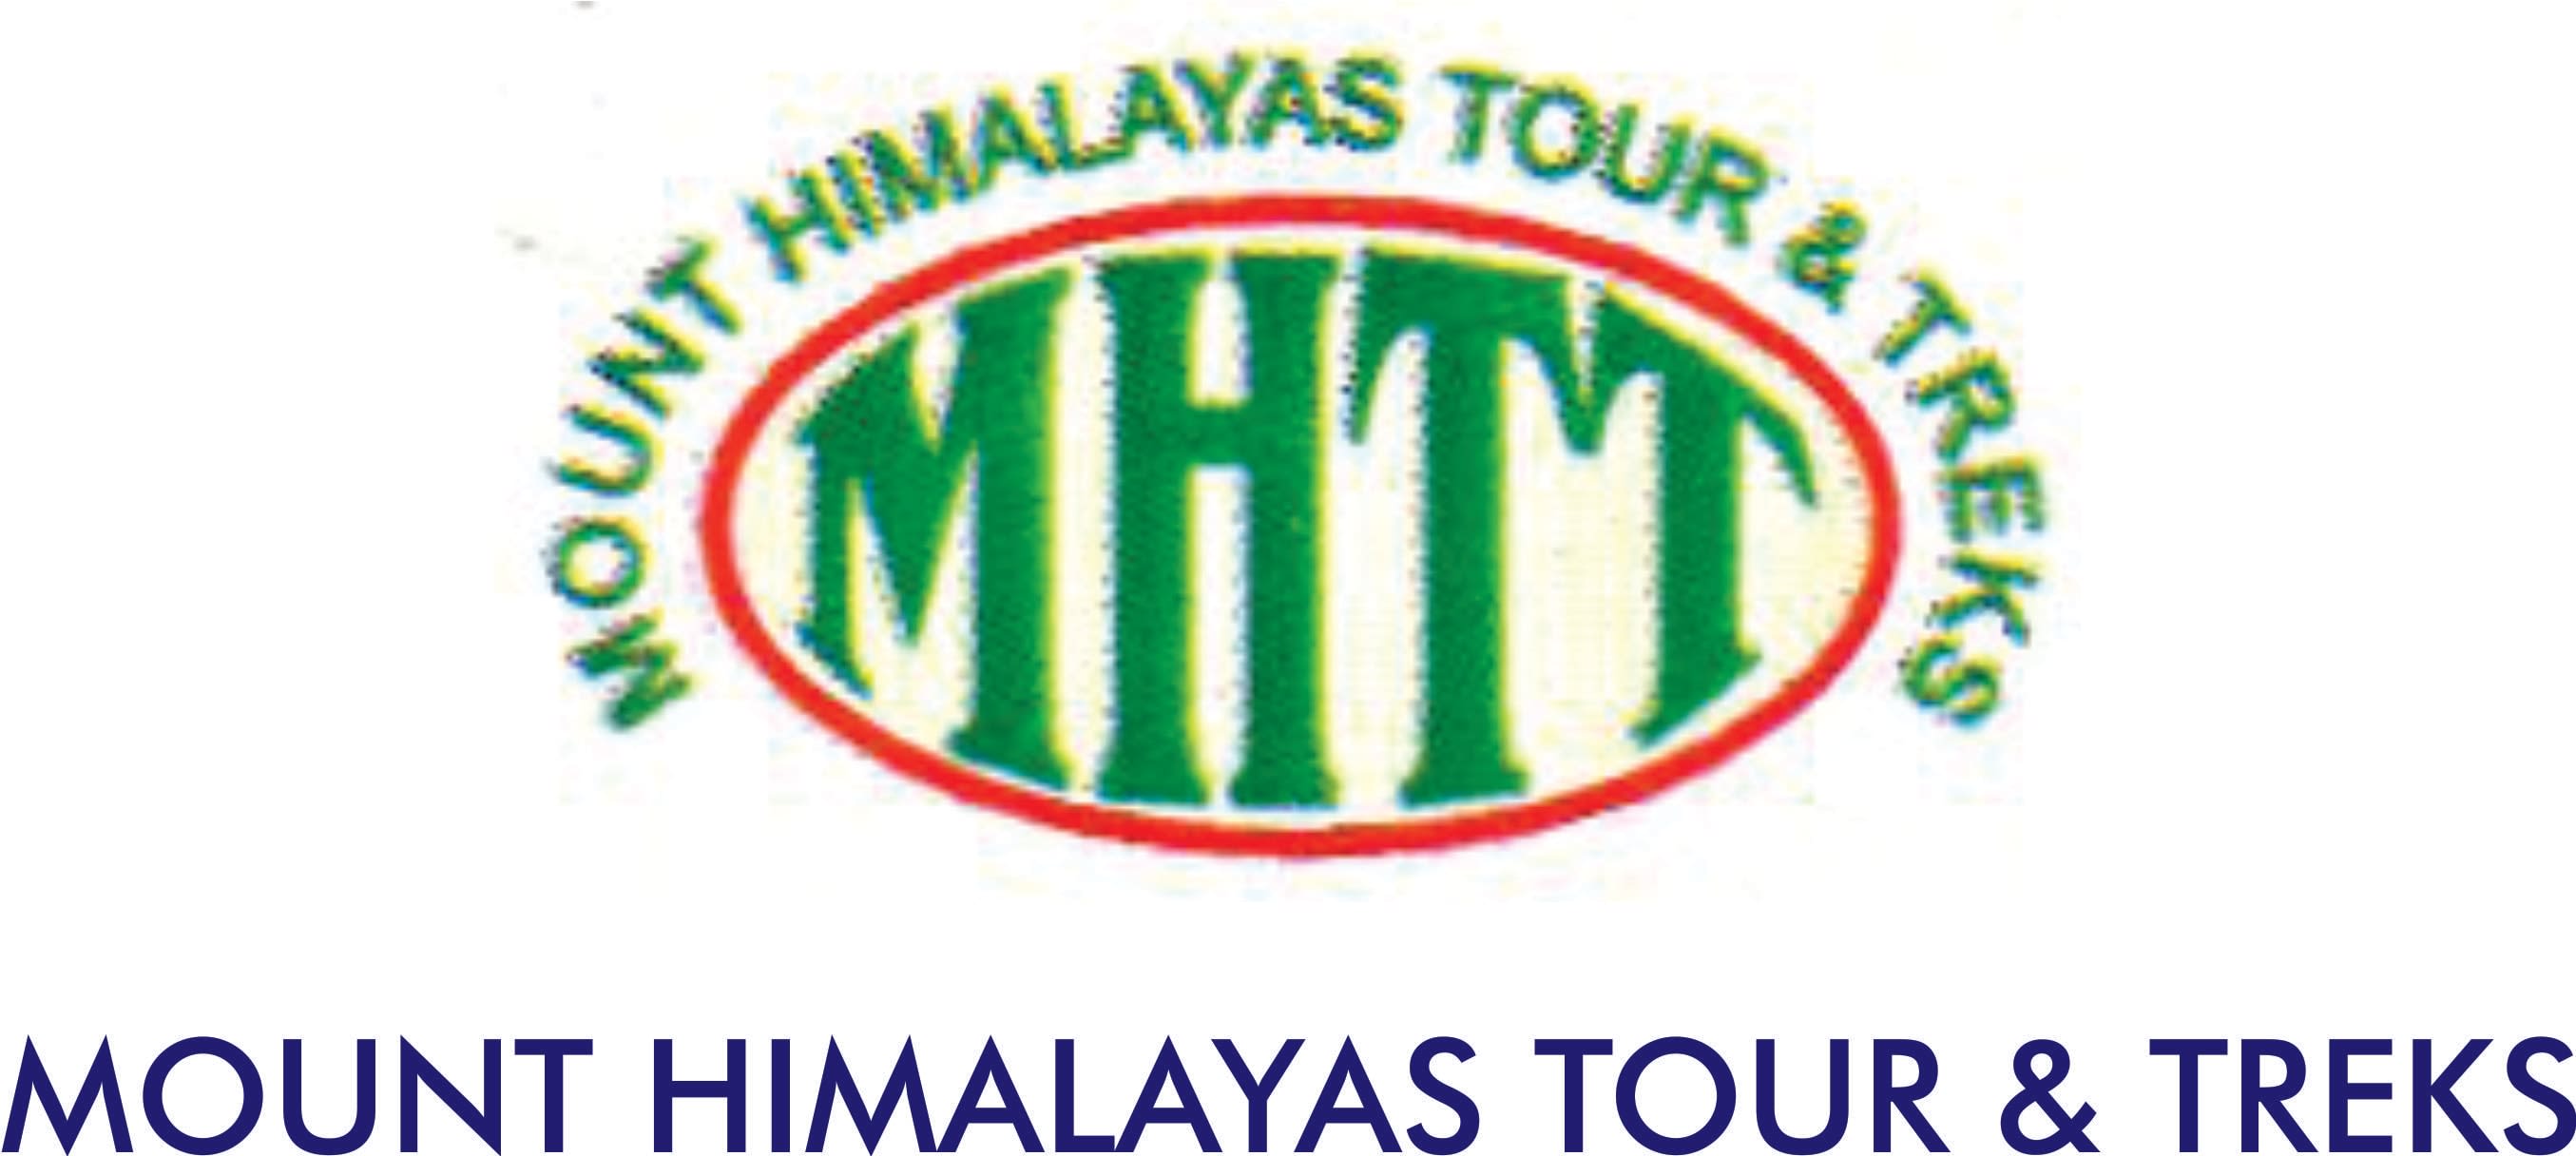 Mount Himalayas Tour And Treks